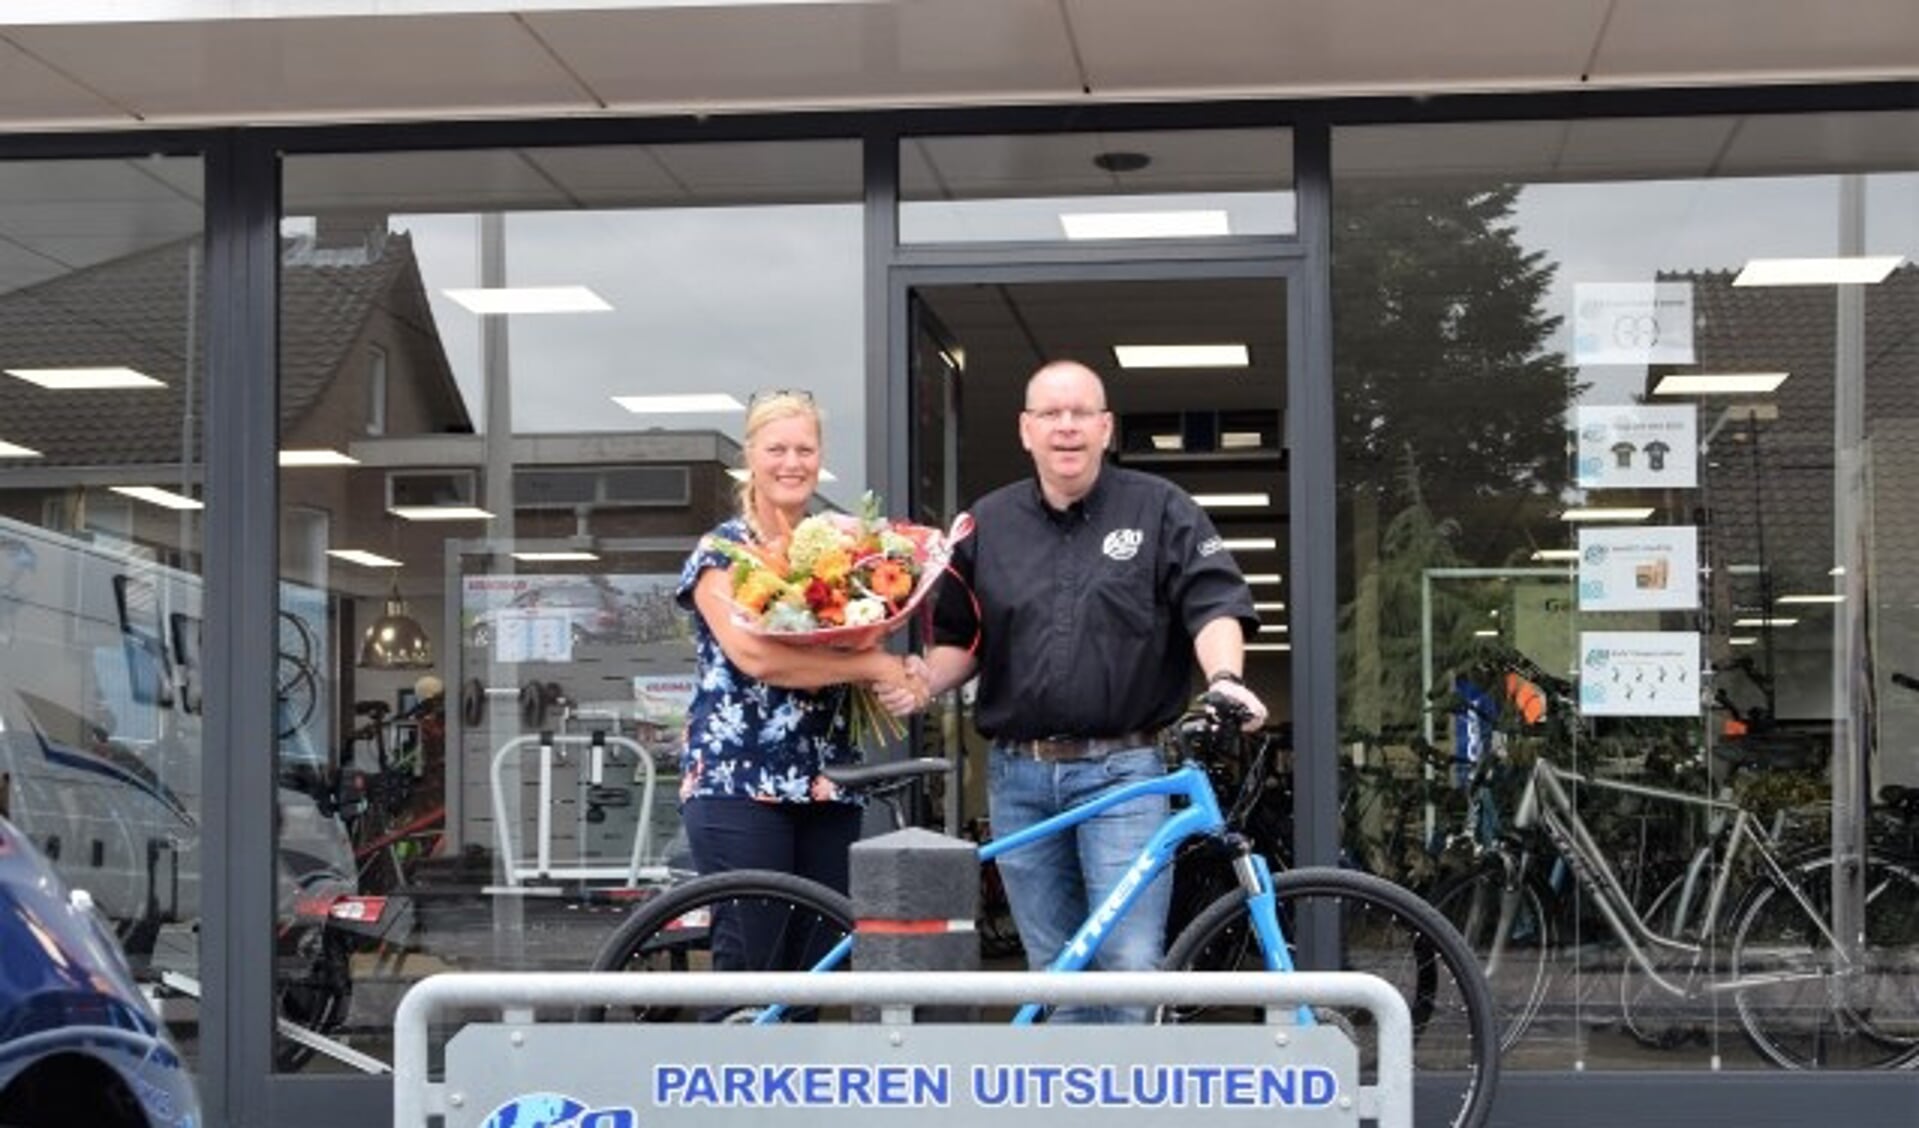 Annemieke Koenen , winnares van de FlipPas maandprijs, ontvangt een nieuwe fiets van Gilbert de Wit. (Foto: Janet Kooren)